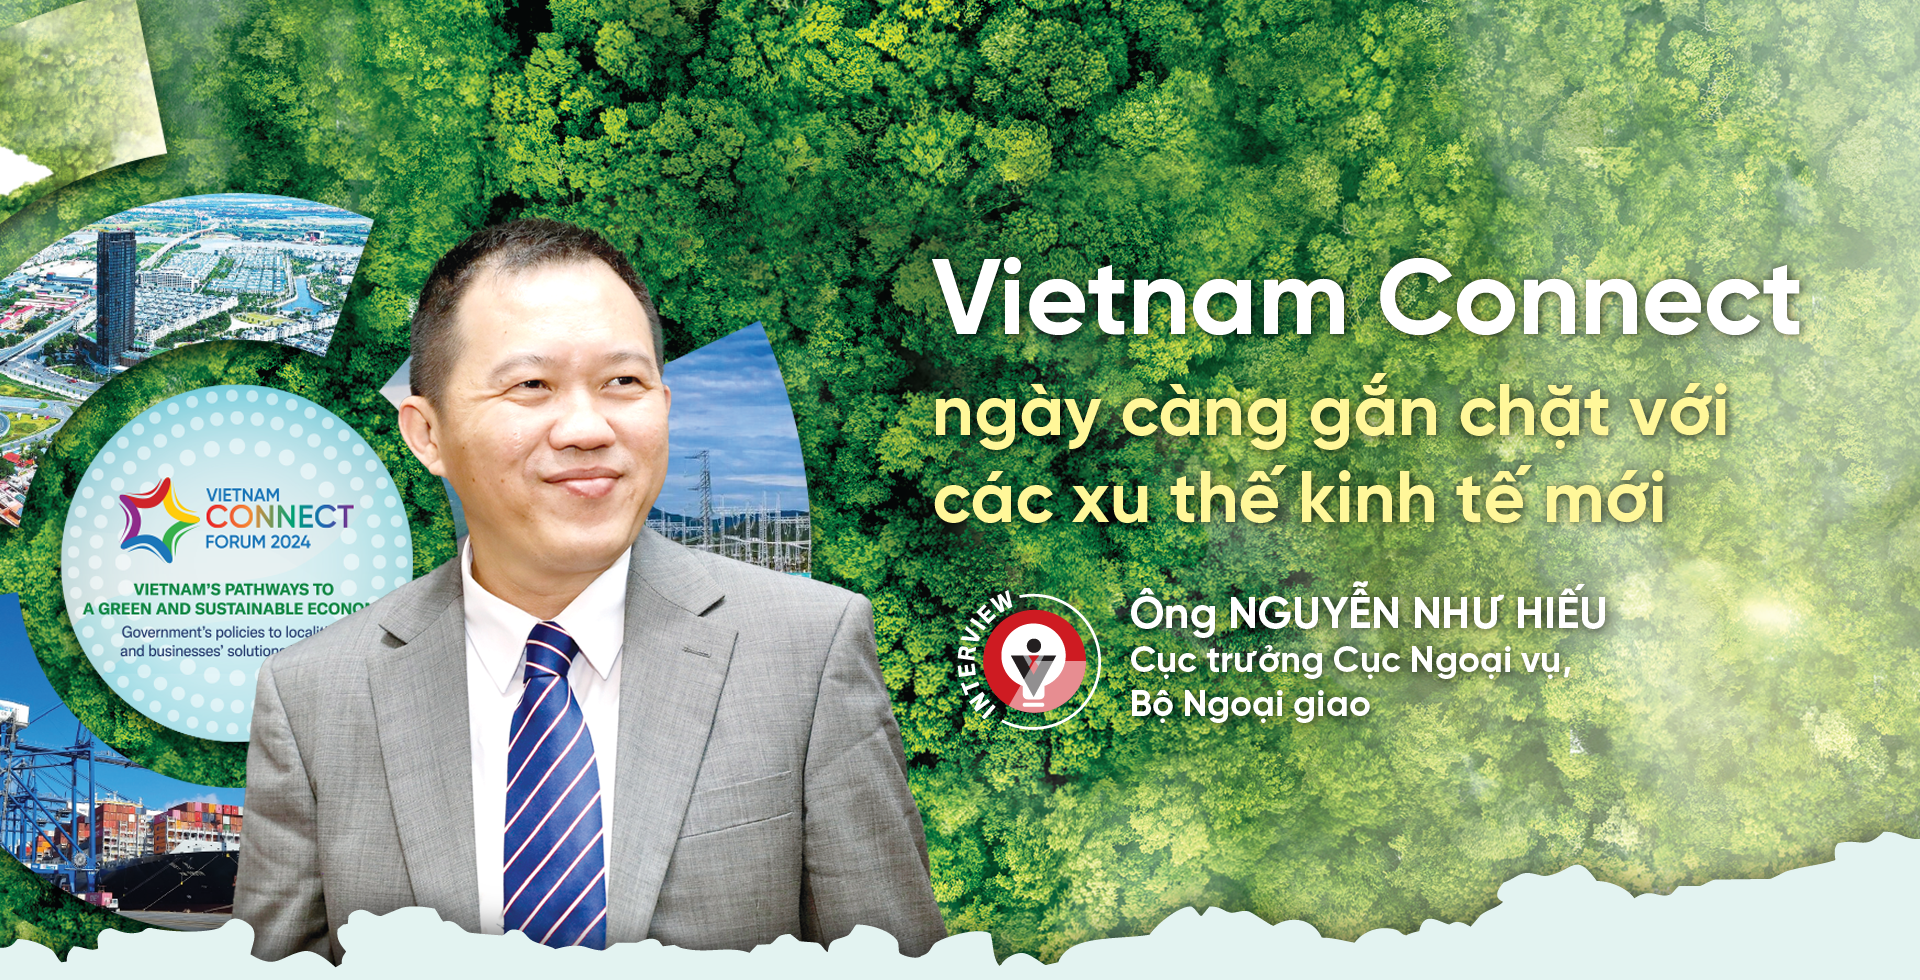 Vietnam Connect ngày càng gắn chặt với các xu thế kinh tế mới - Ảnh 1